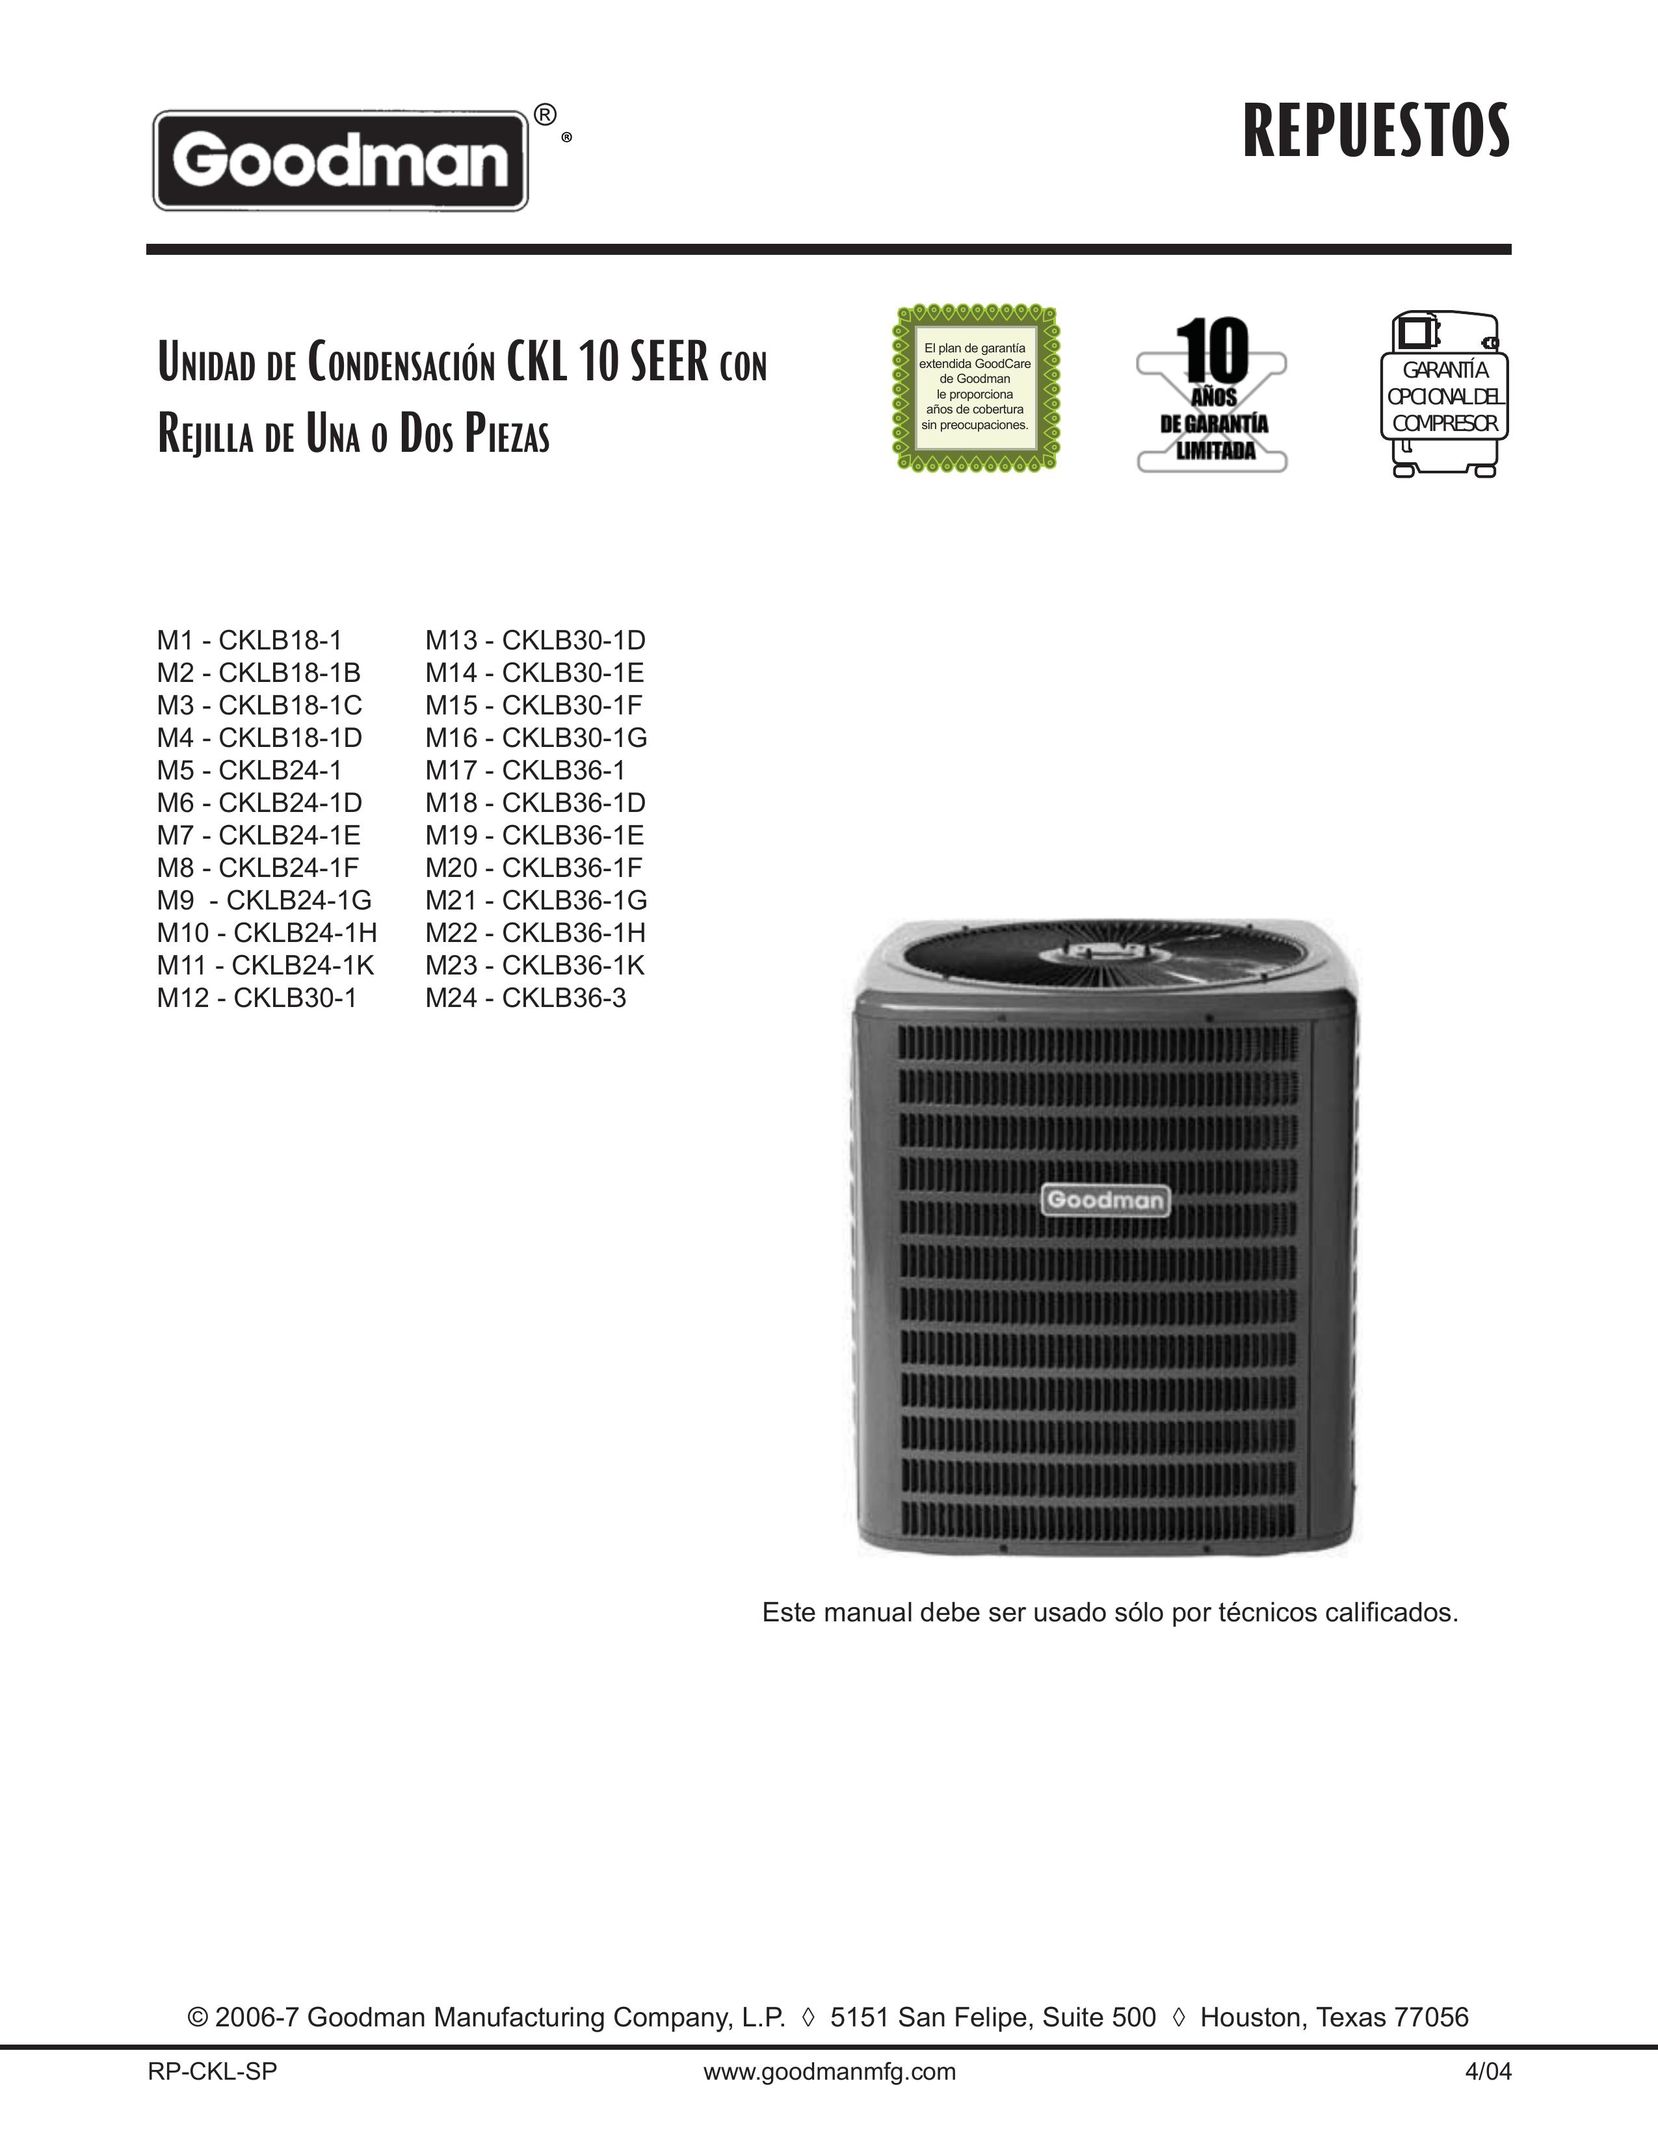 Goodman Mfg CKLB24-1E Air Conditioner User Manual